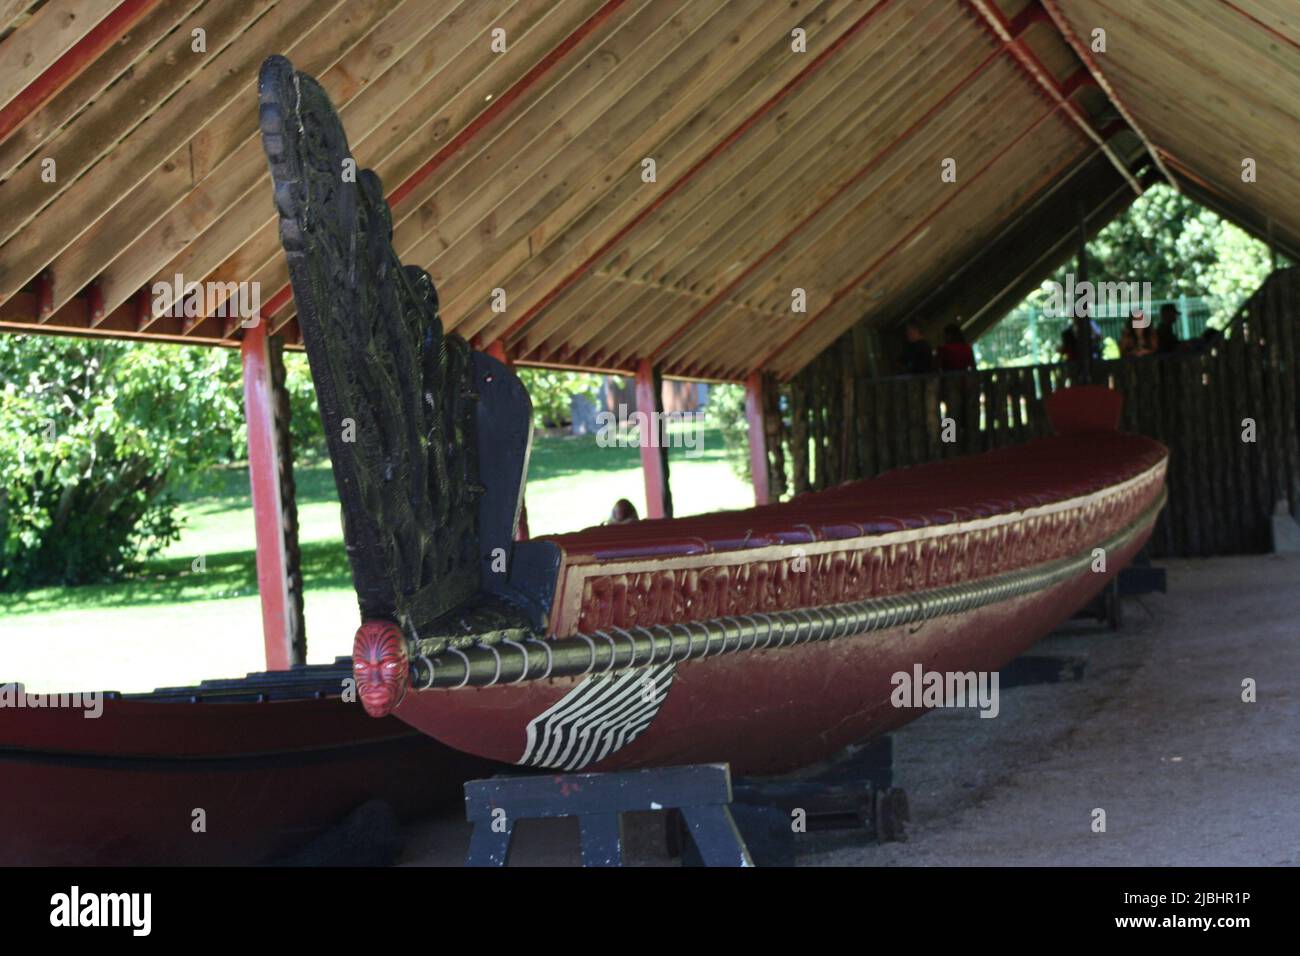 A traditional Maori Waka (canoe), New Zealand Stock Photo